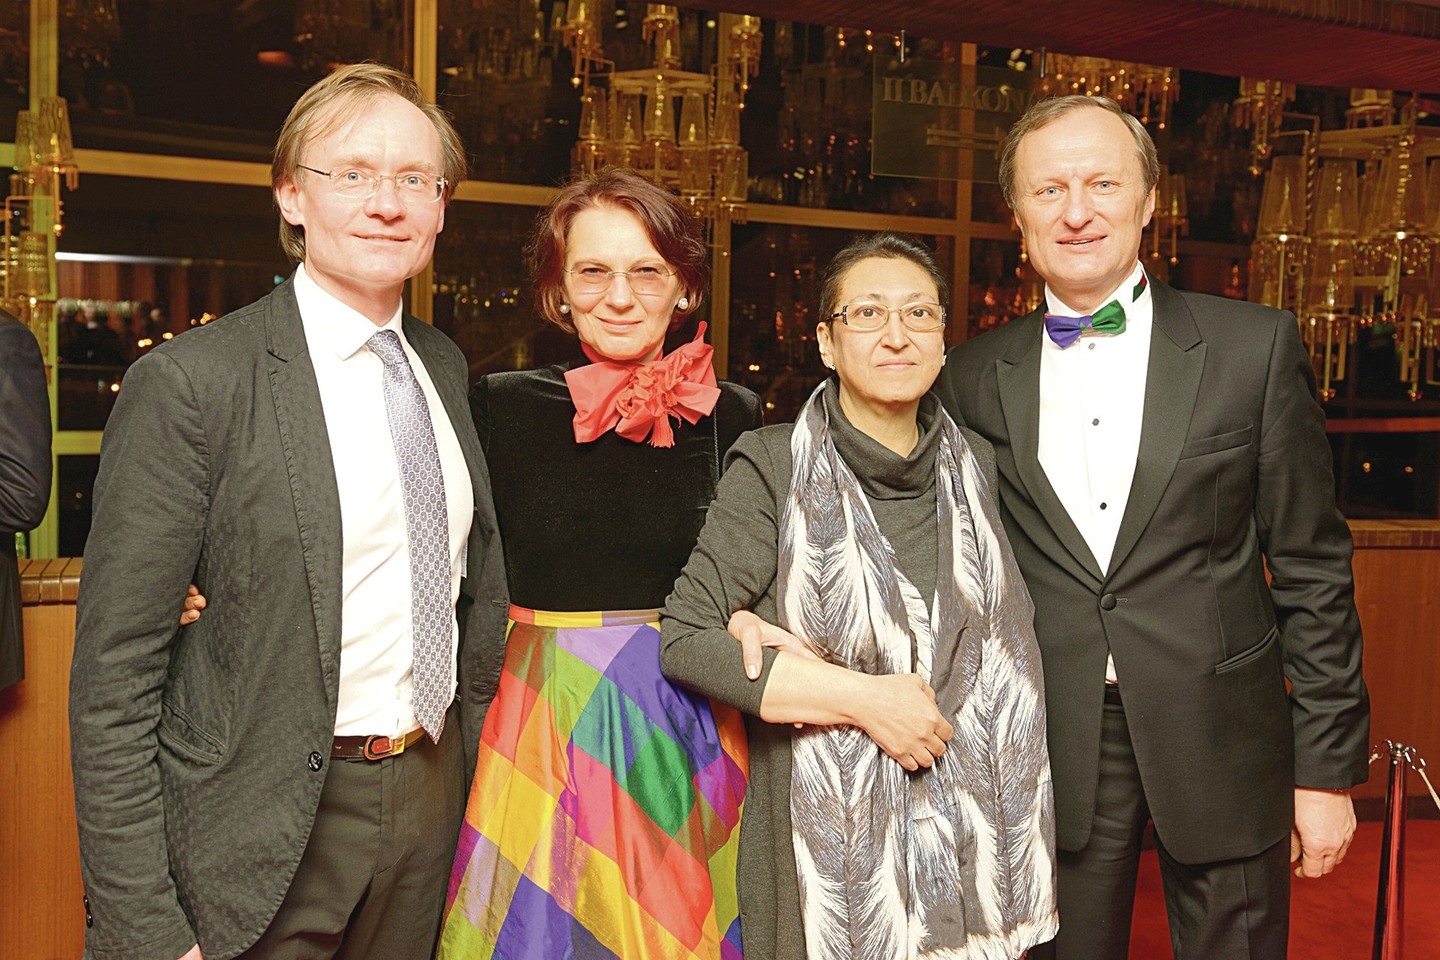 2016-ųjų gruodžio 31-osios vakarą R.Šervenikas (kairėje) su žmona pianiste Džeren ( trečia iš kairės) praleido Lietuvos operos ir baleto teatro vadovo Gintauto Kėvišo ir jo sutuoktinės Rūtos draugijoje – abi šeimos įsiamžino per baleto „Don Kichotas” pertrauką.